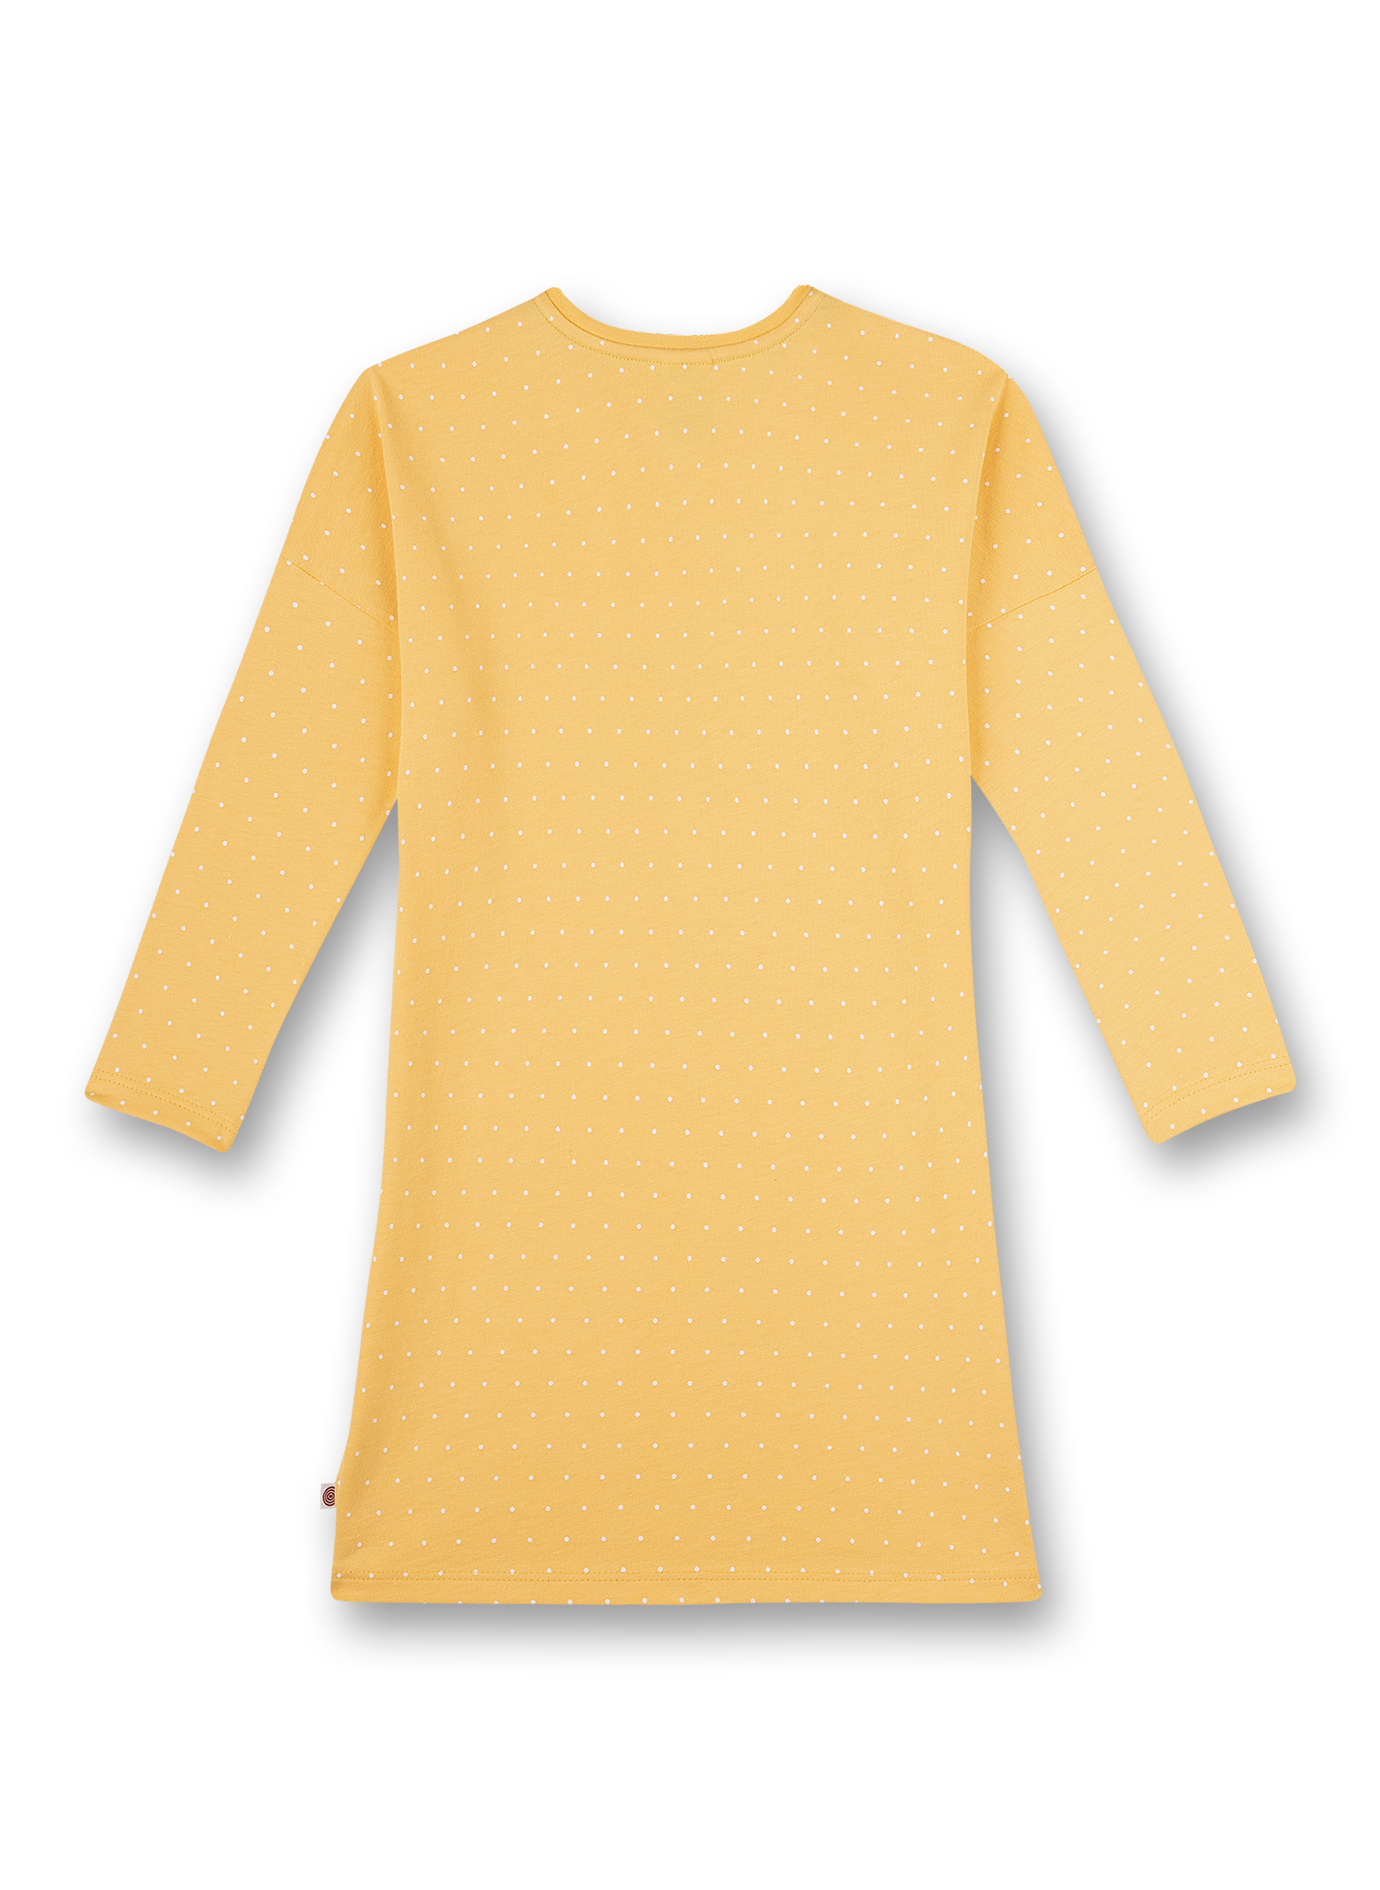 Mädchen-Nachthemd Gelb Back to Nature